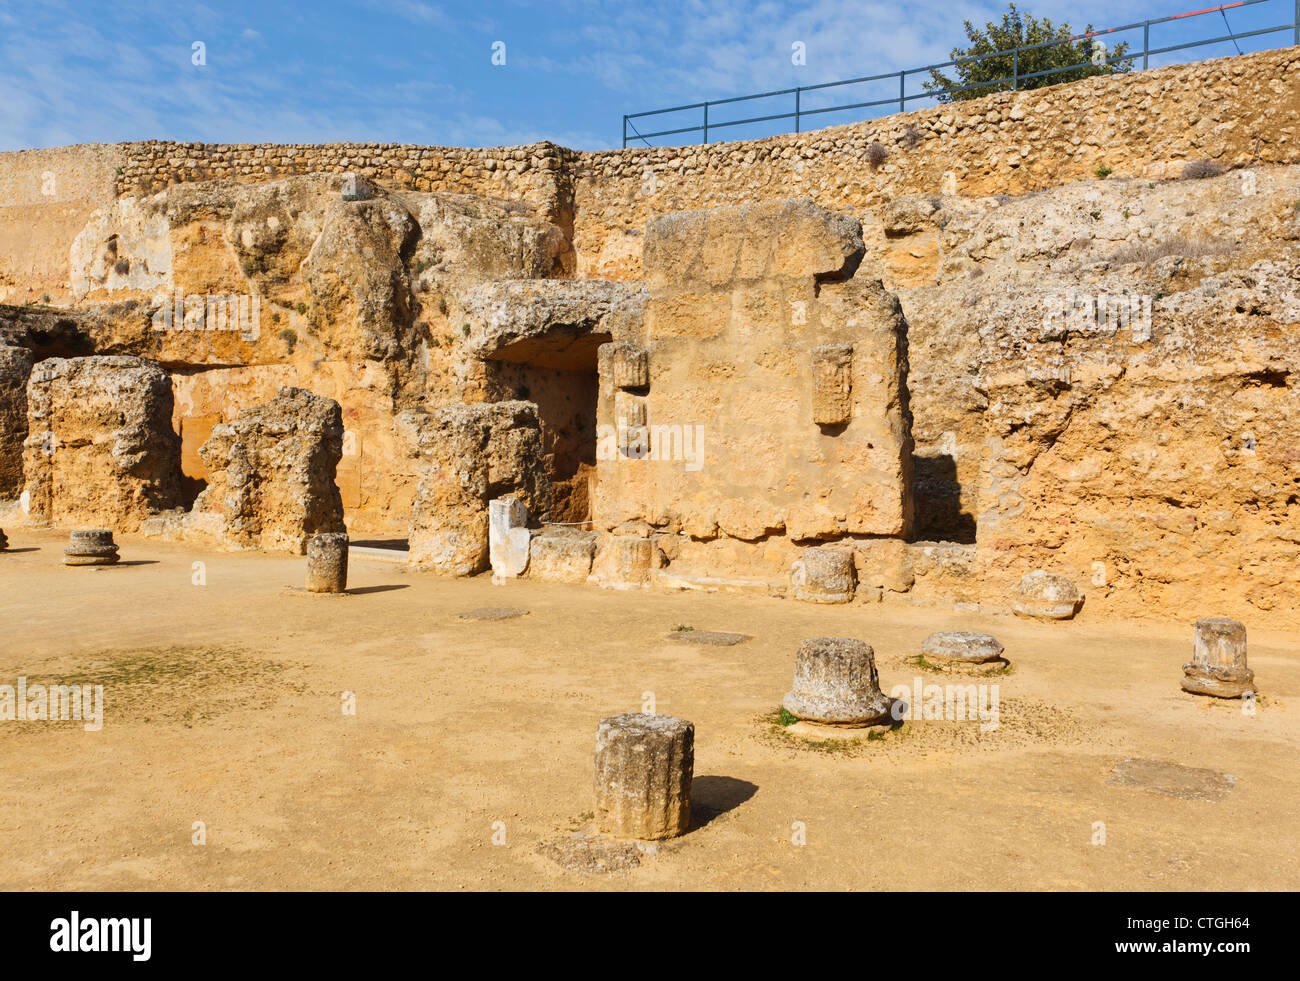 Il complesso archeologico, Carmona, provincia di Siviglia, Spagna. Tumba de Servilia, la tomba di Servilia. Foto Stock